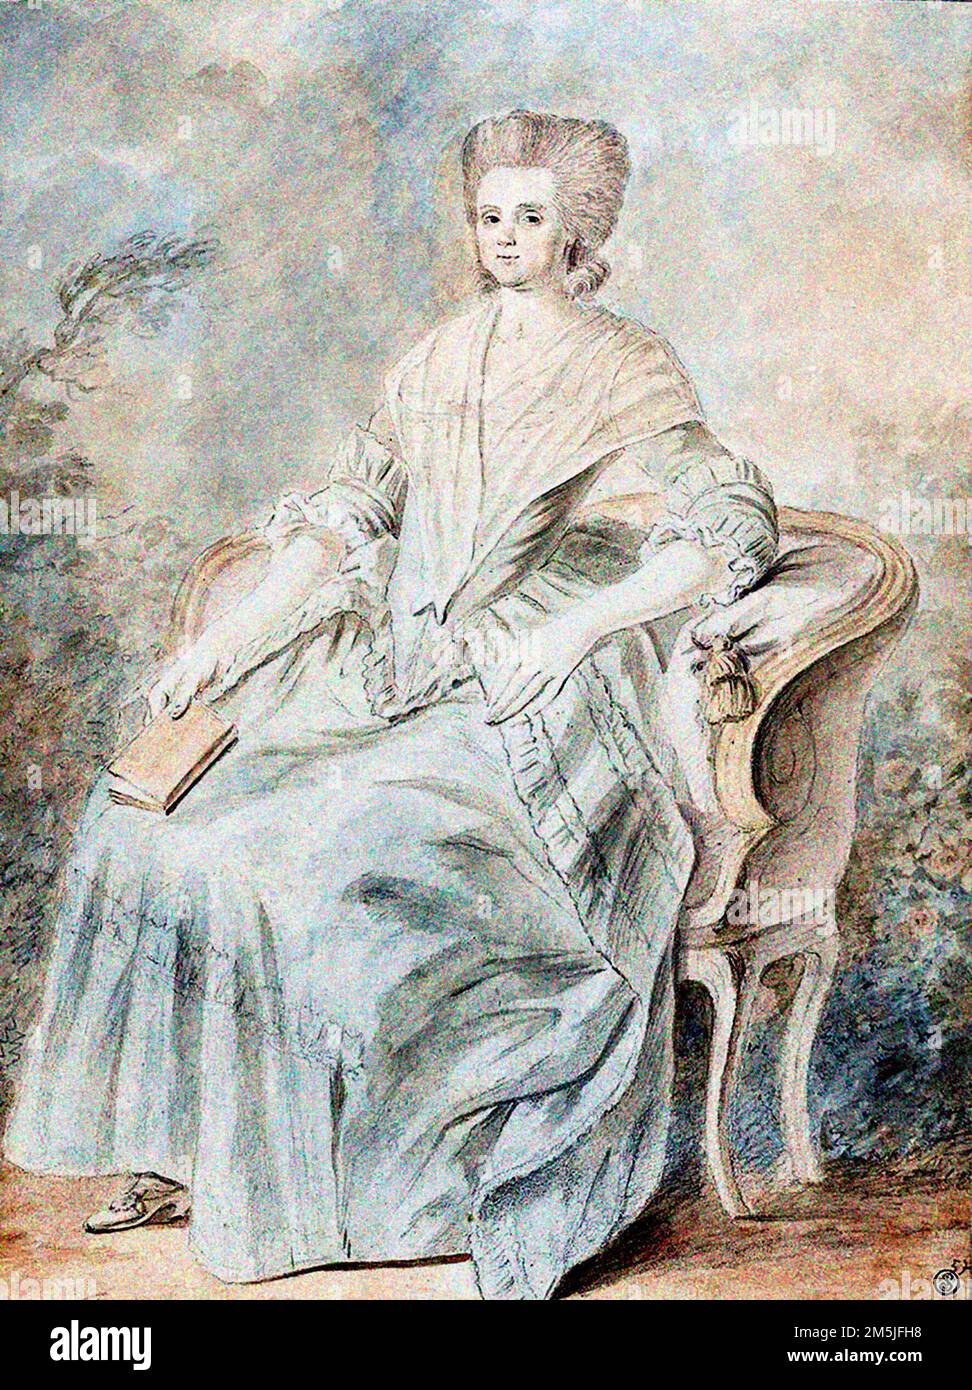 Portrait du dramaturge français et activiste politique, Olympe de gouges (Marie Gouze, 1748-1793), aquarelle sur graphite sur papier, 1793 Banque D'Images